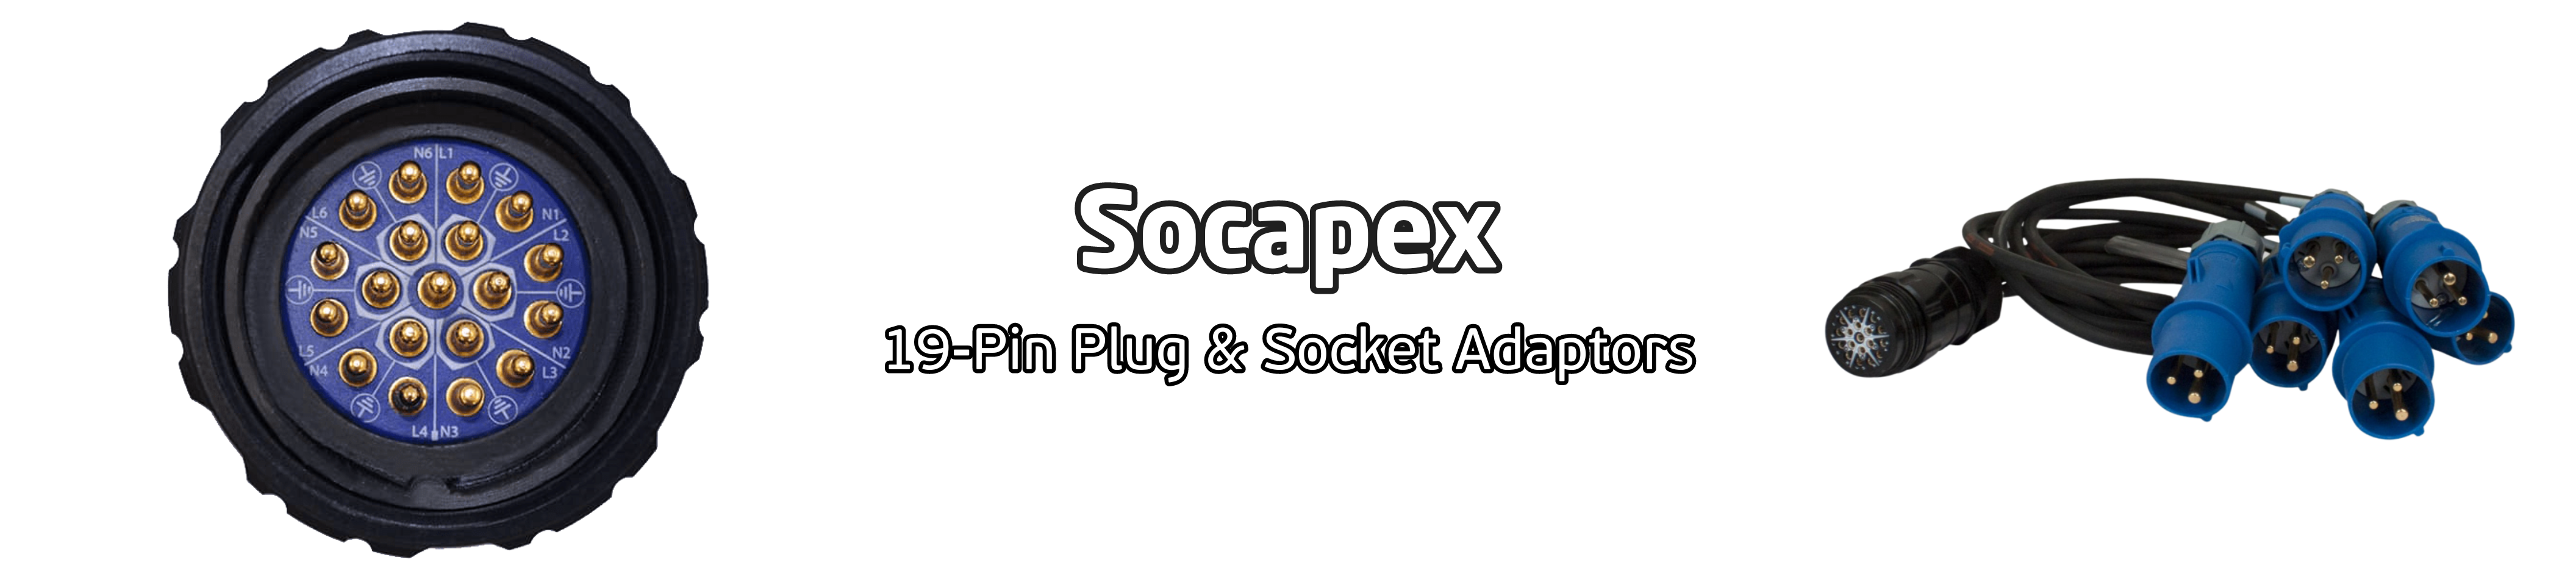 Socapex Adaptors